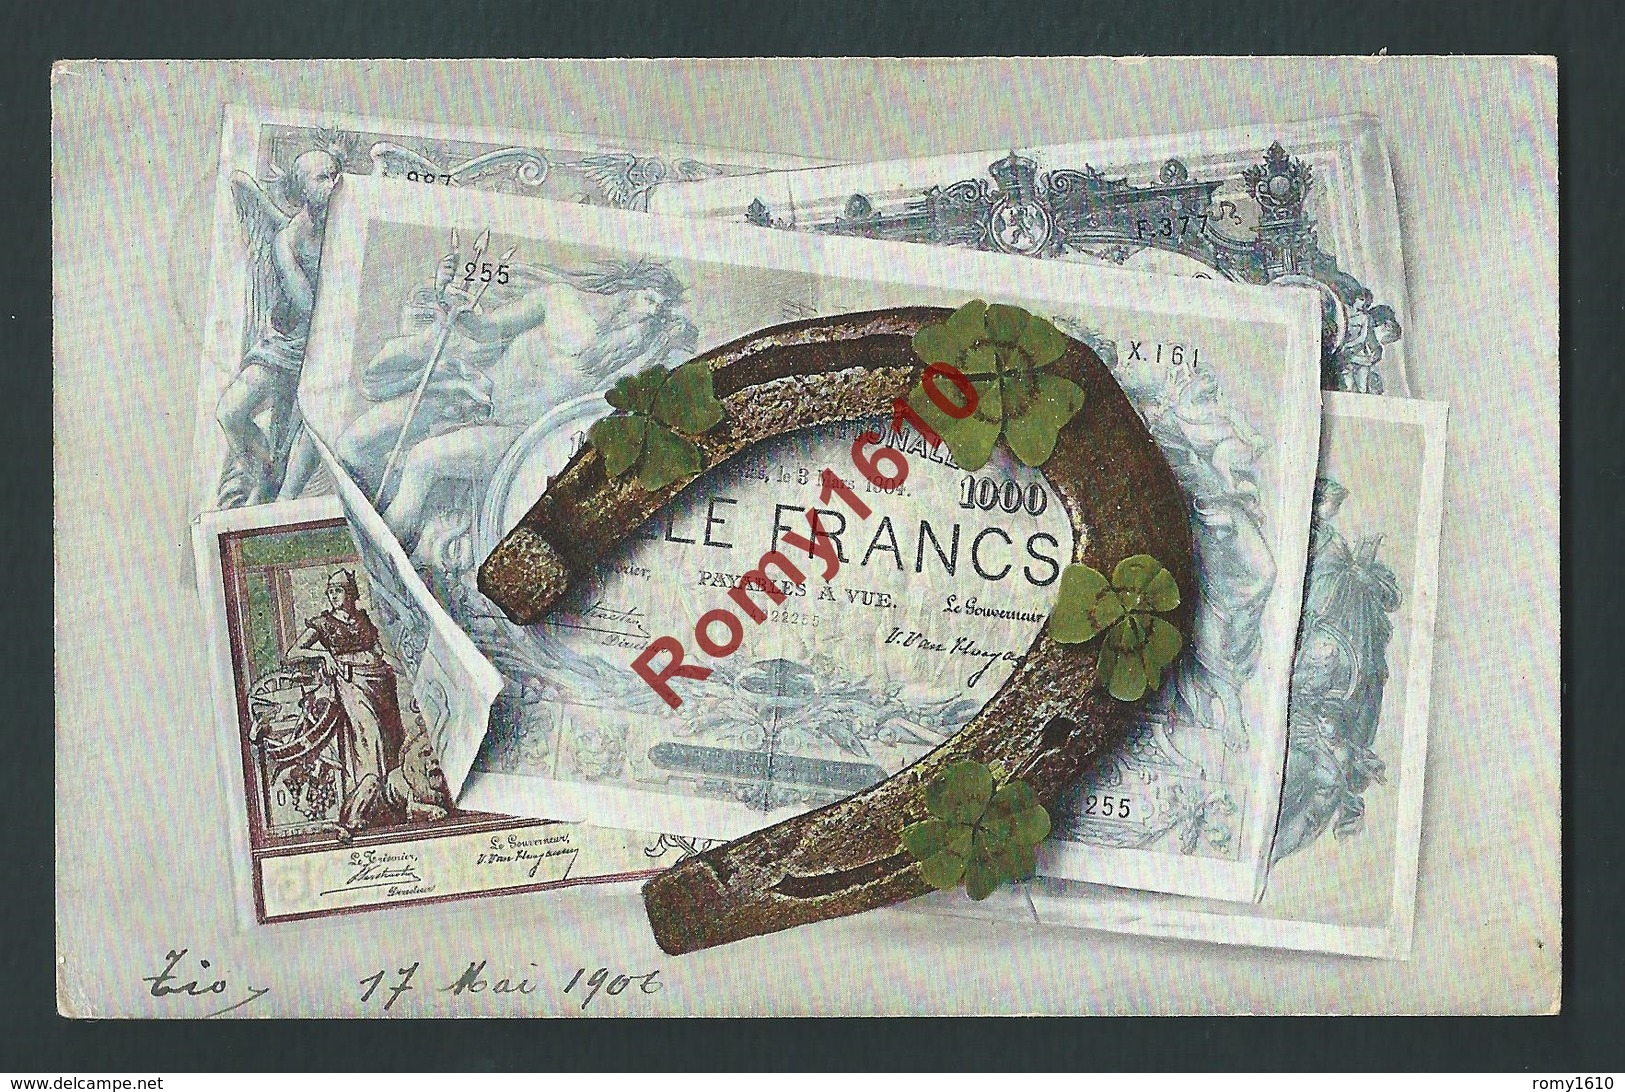 Litho Billet De Banque Porte Bonheur. 1000 Francs. Fer à Cheval, Trèfles. Circulé En 1900. Série 965.  2 Scans. - Munten (afbeeldingen)